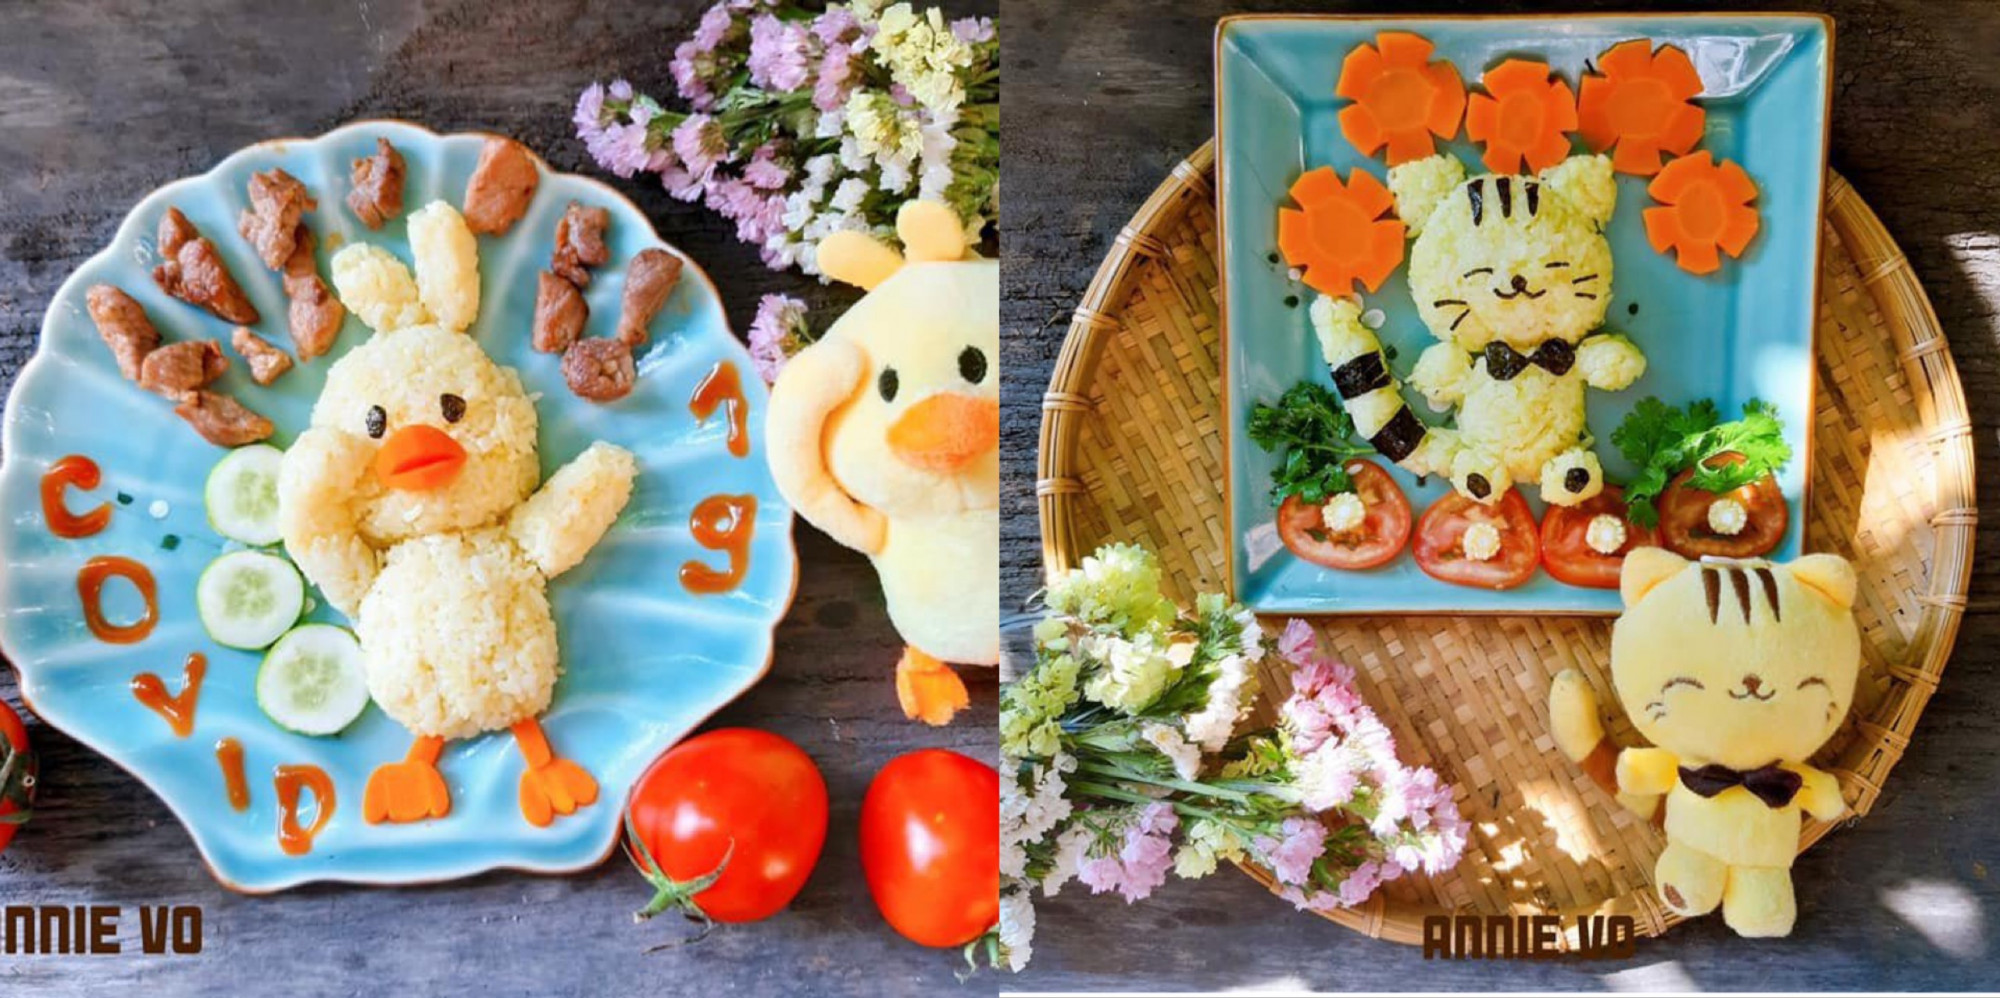 Trang trí món ăn của bạn thêm phần dễ thương bằng cách thưởng thức những hình ảnh đầy màu sắc, hấp dẫn và đầy cảm xúc. Những chiếc bánh, đồ uống và món ăn đang chờ đón bạn để khám phá.